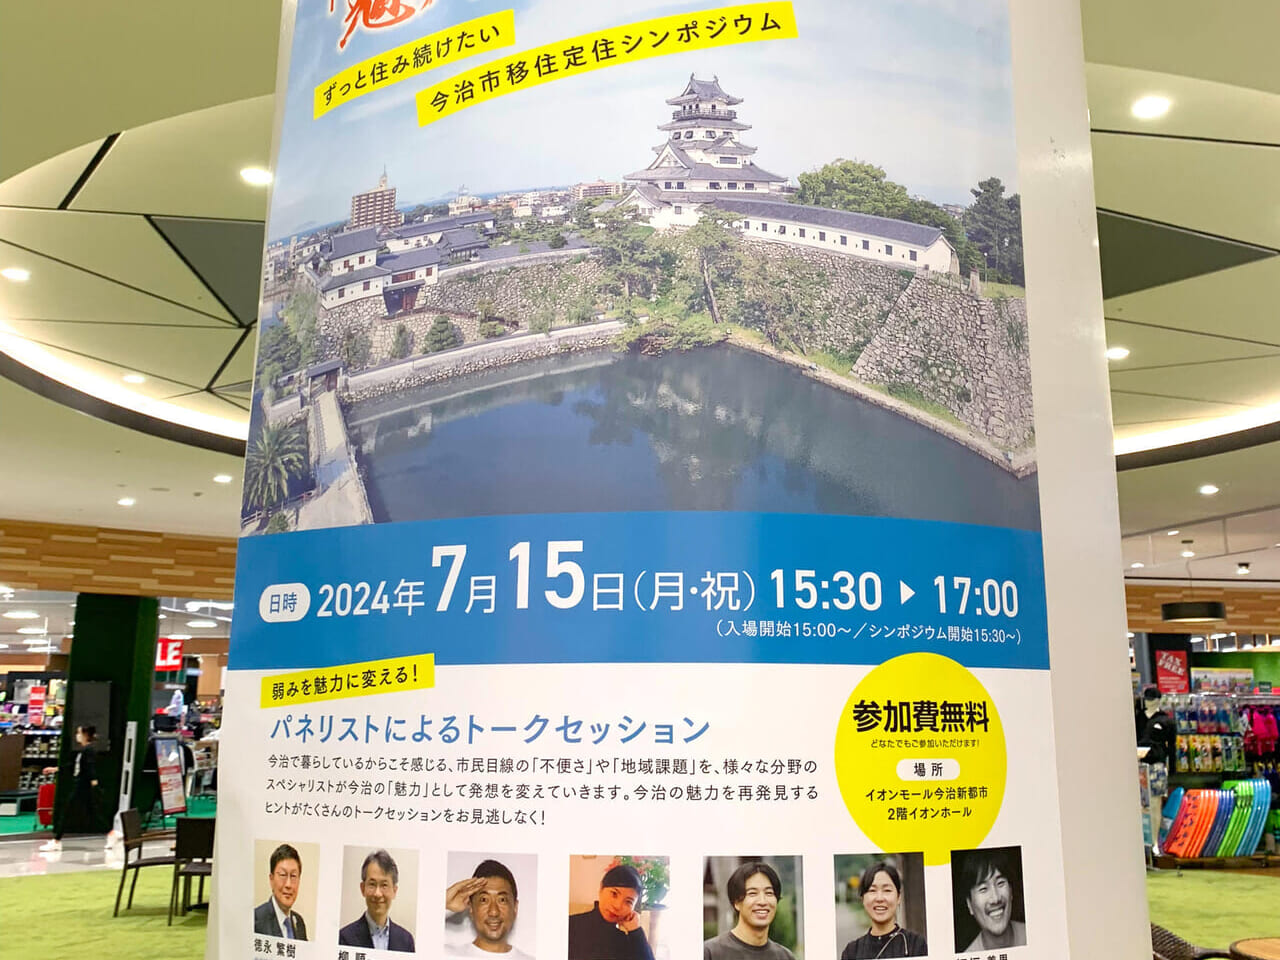 イオンモール今治新都市で徳永市長を始めとした著名人たちが集まるトークセッションが開催予定!!